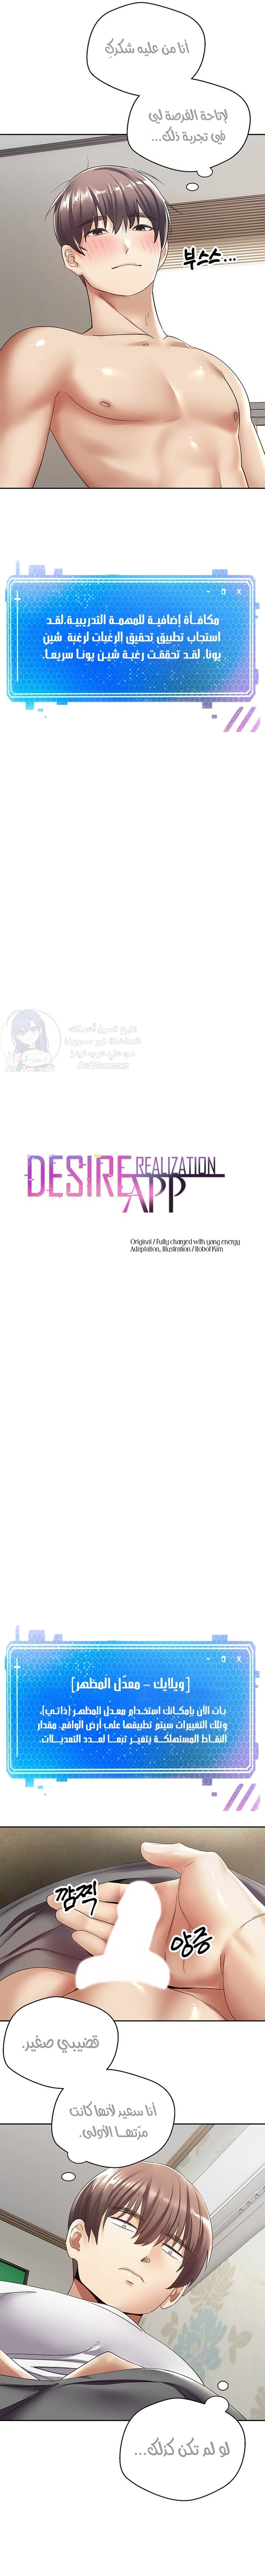 desire realization app - 4 - 6531e83879519.webp